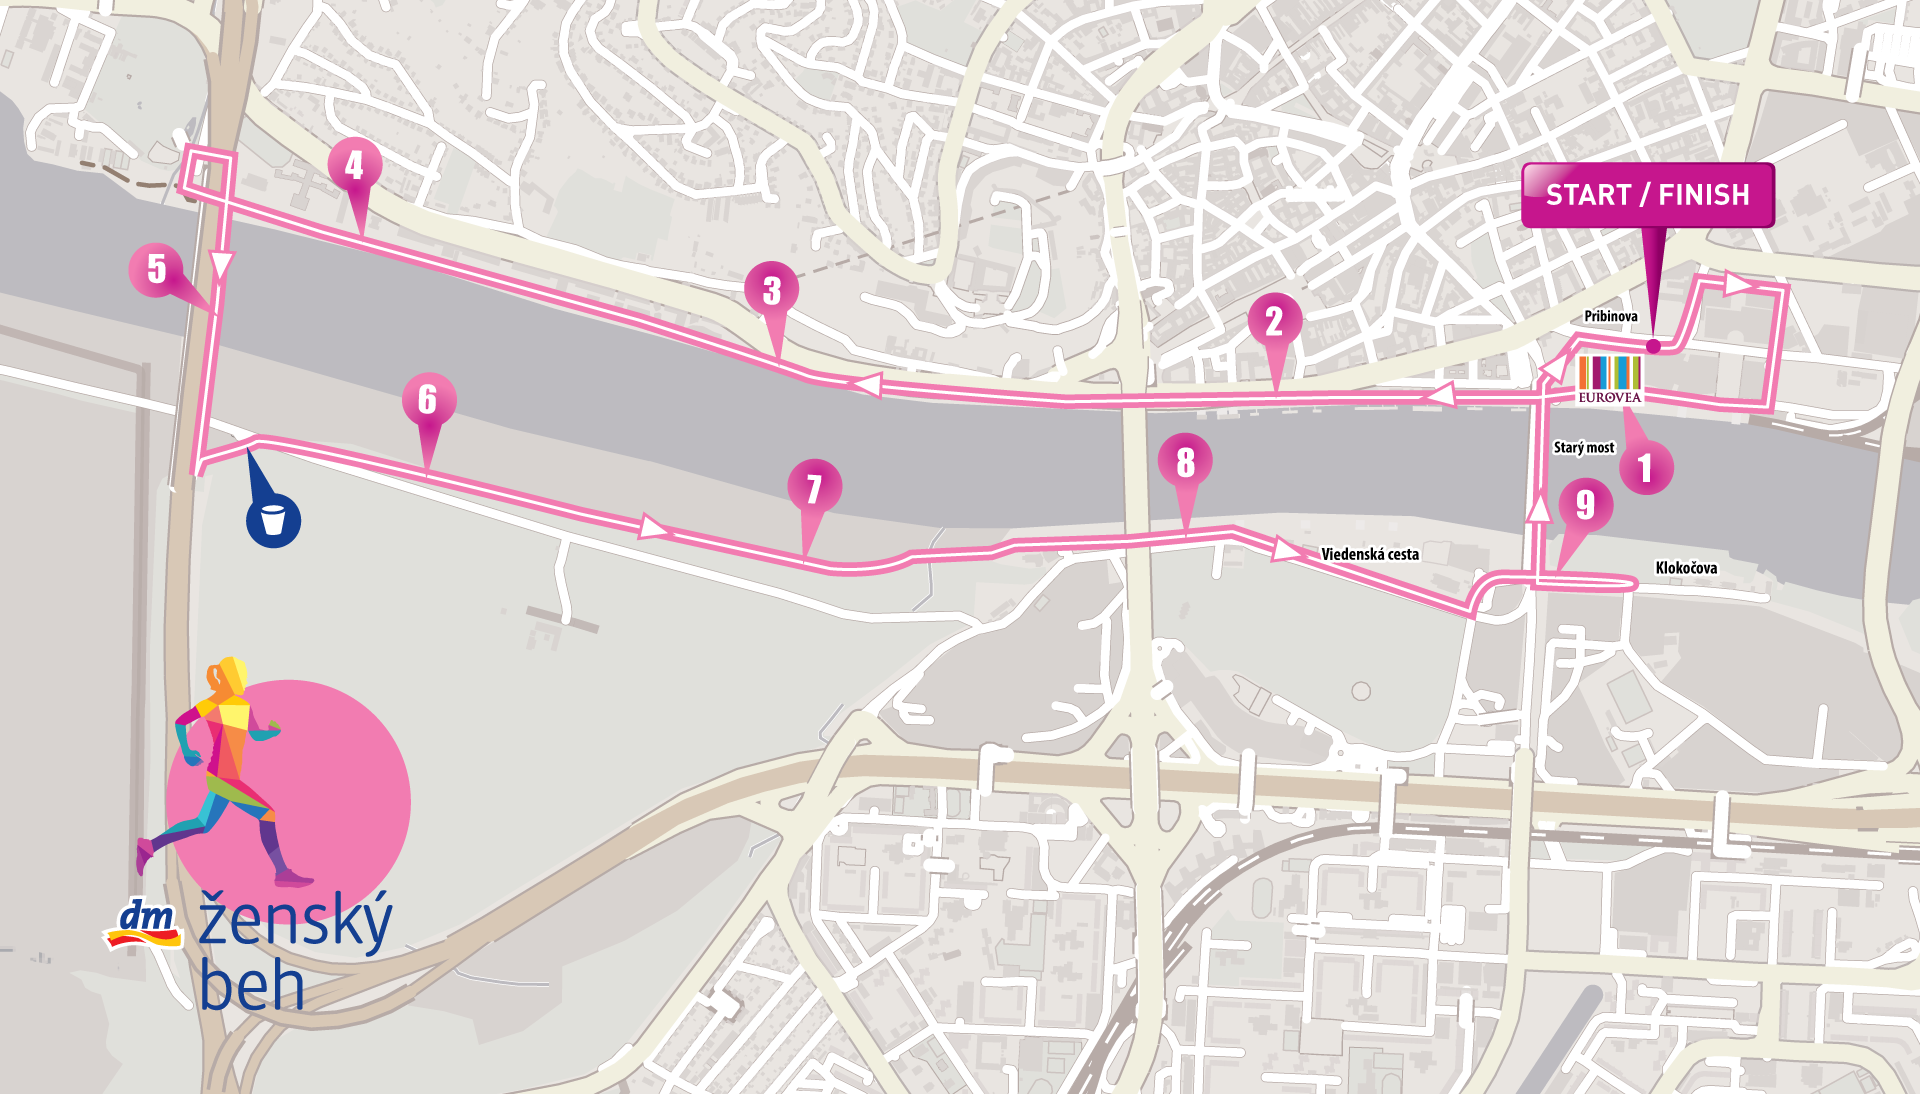 dm ženský beh - mapa 10 km